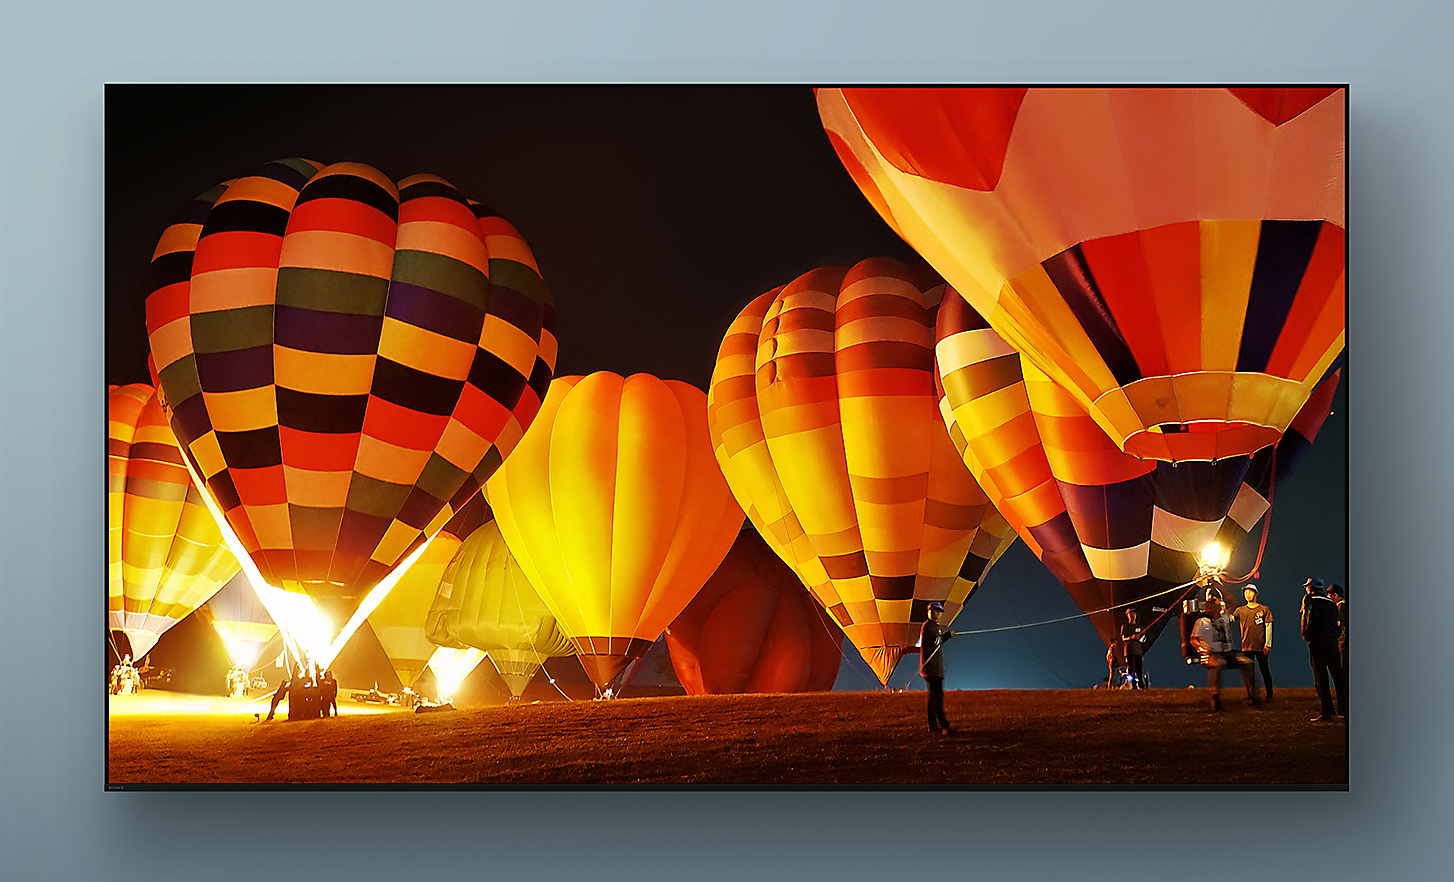 تلفزيون BRAVIA مع لقطة شاشة لمناطيد متعددة الألوان تحلق ليلاً